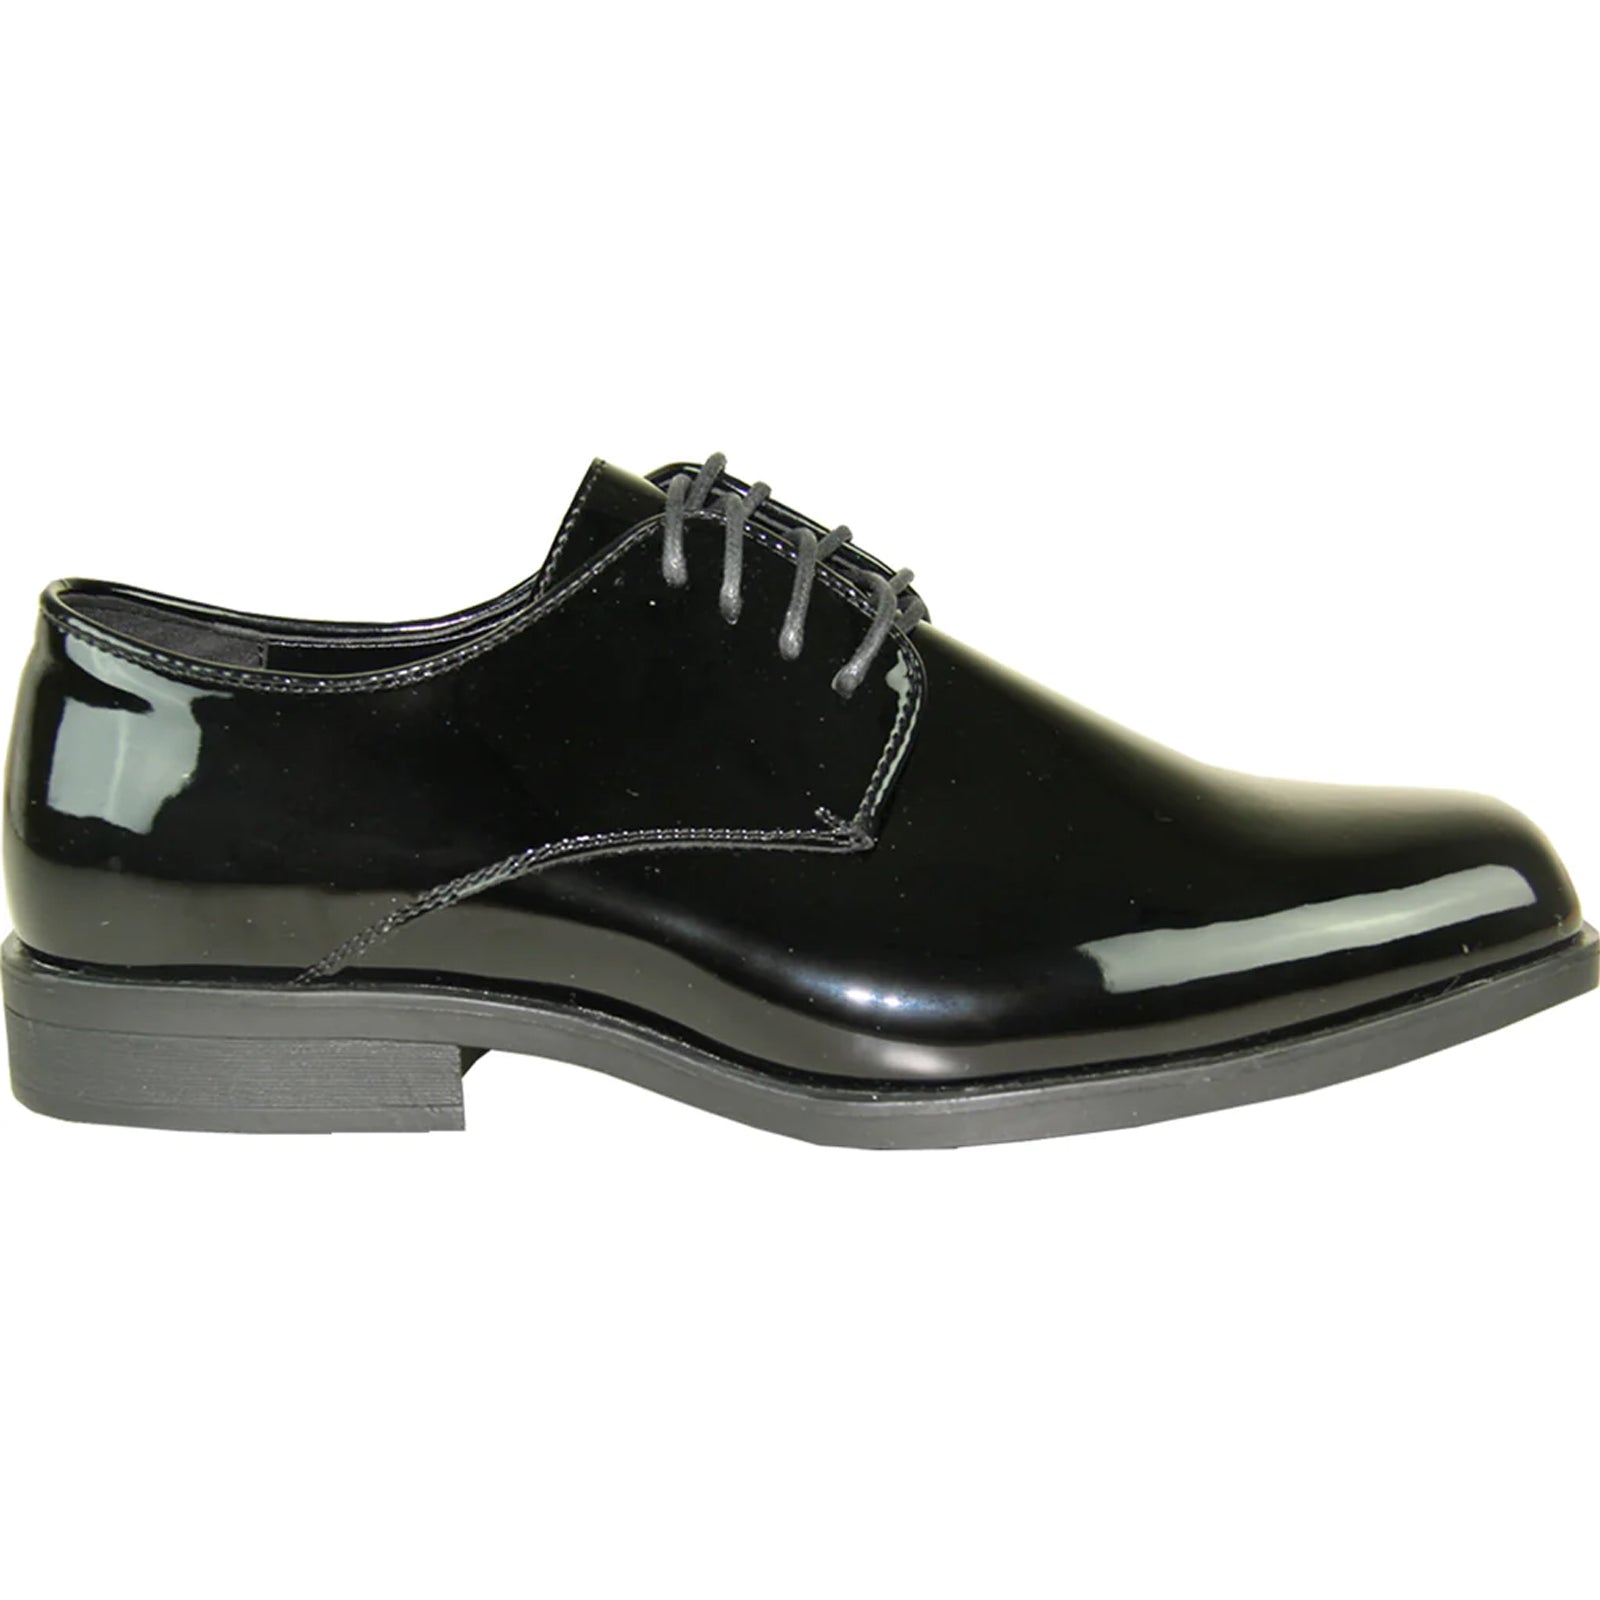 "Black Patent Tuxedo Dress Shoe - Men's Classic Plain Square Toe"